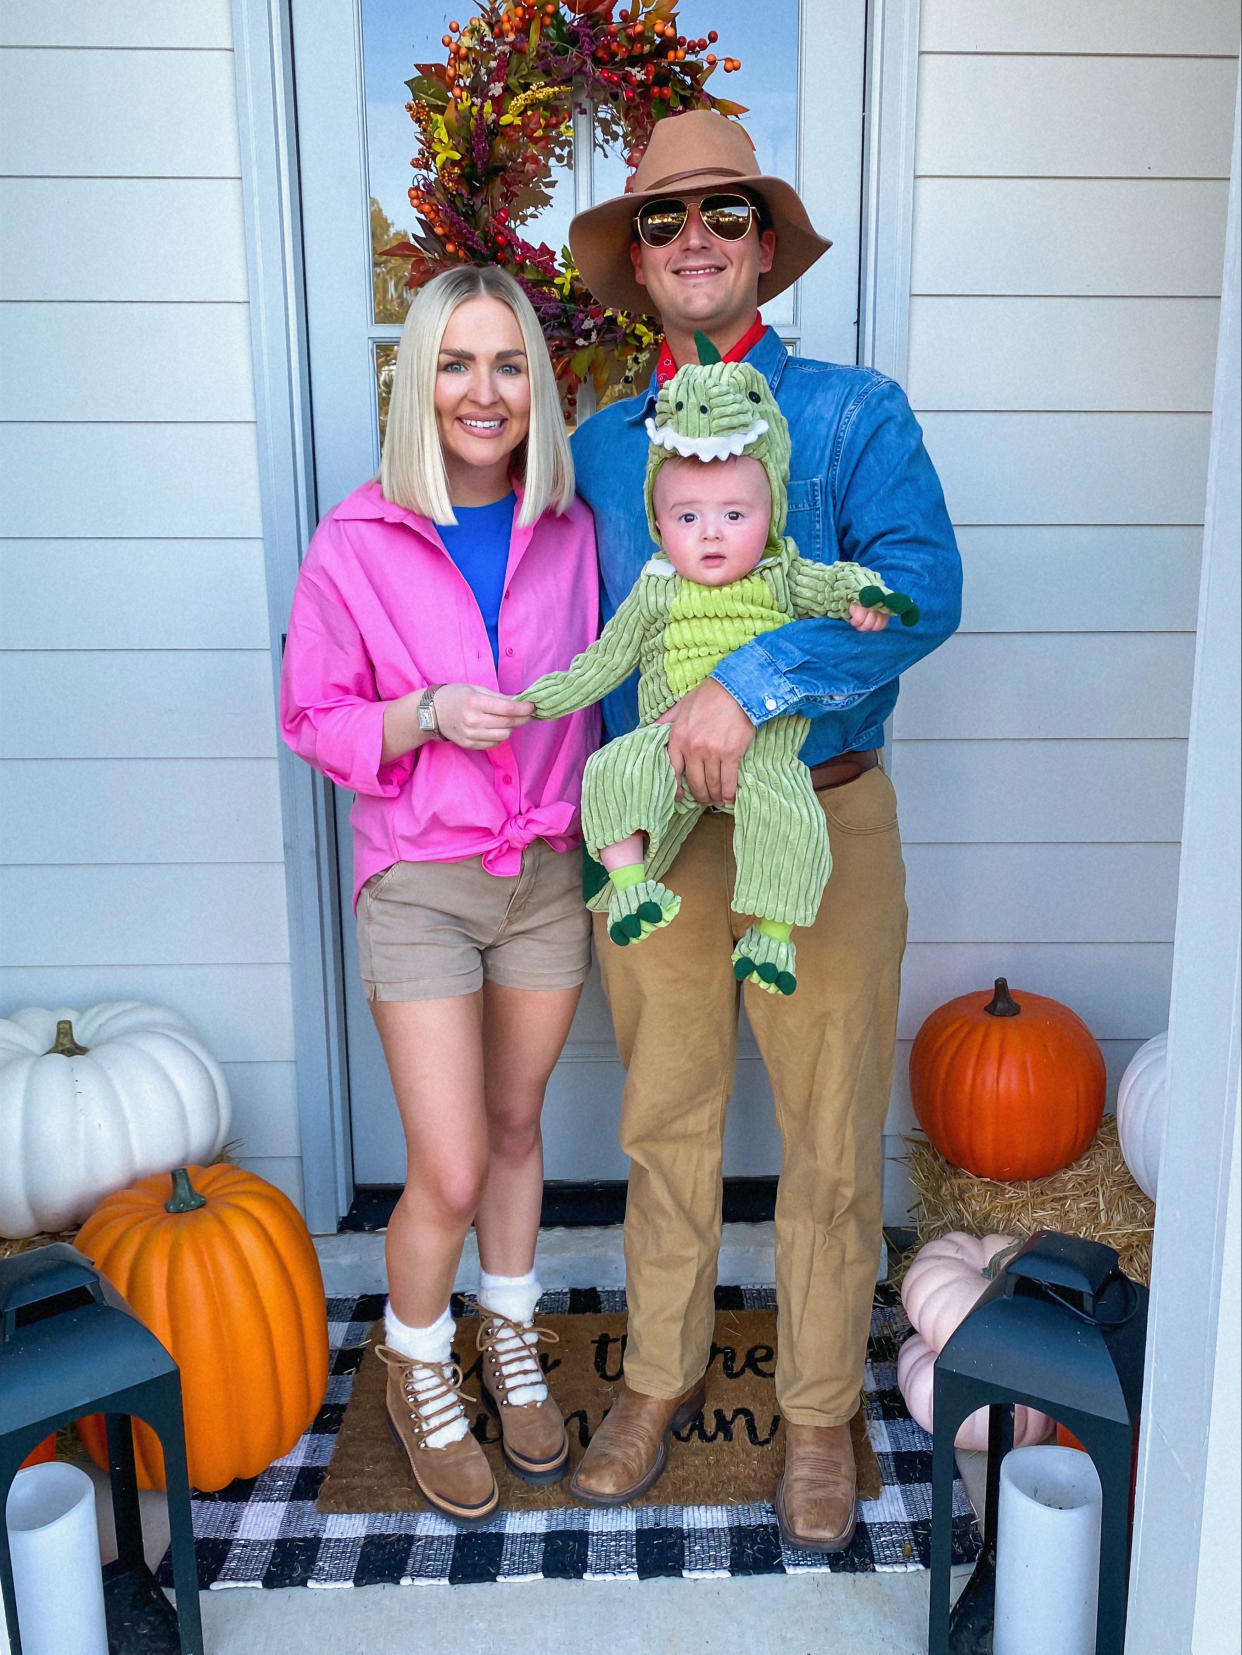 jurassic park family halloween costume (Kelsie Bynum)